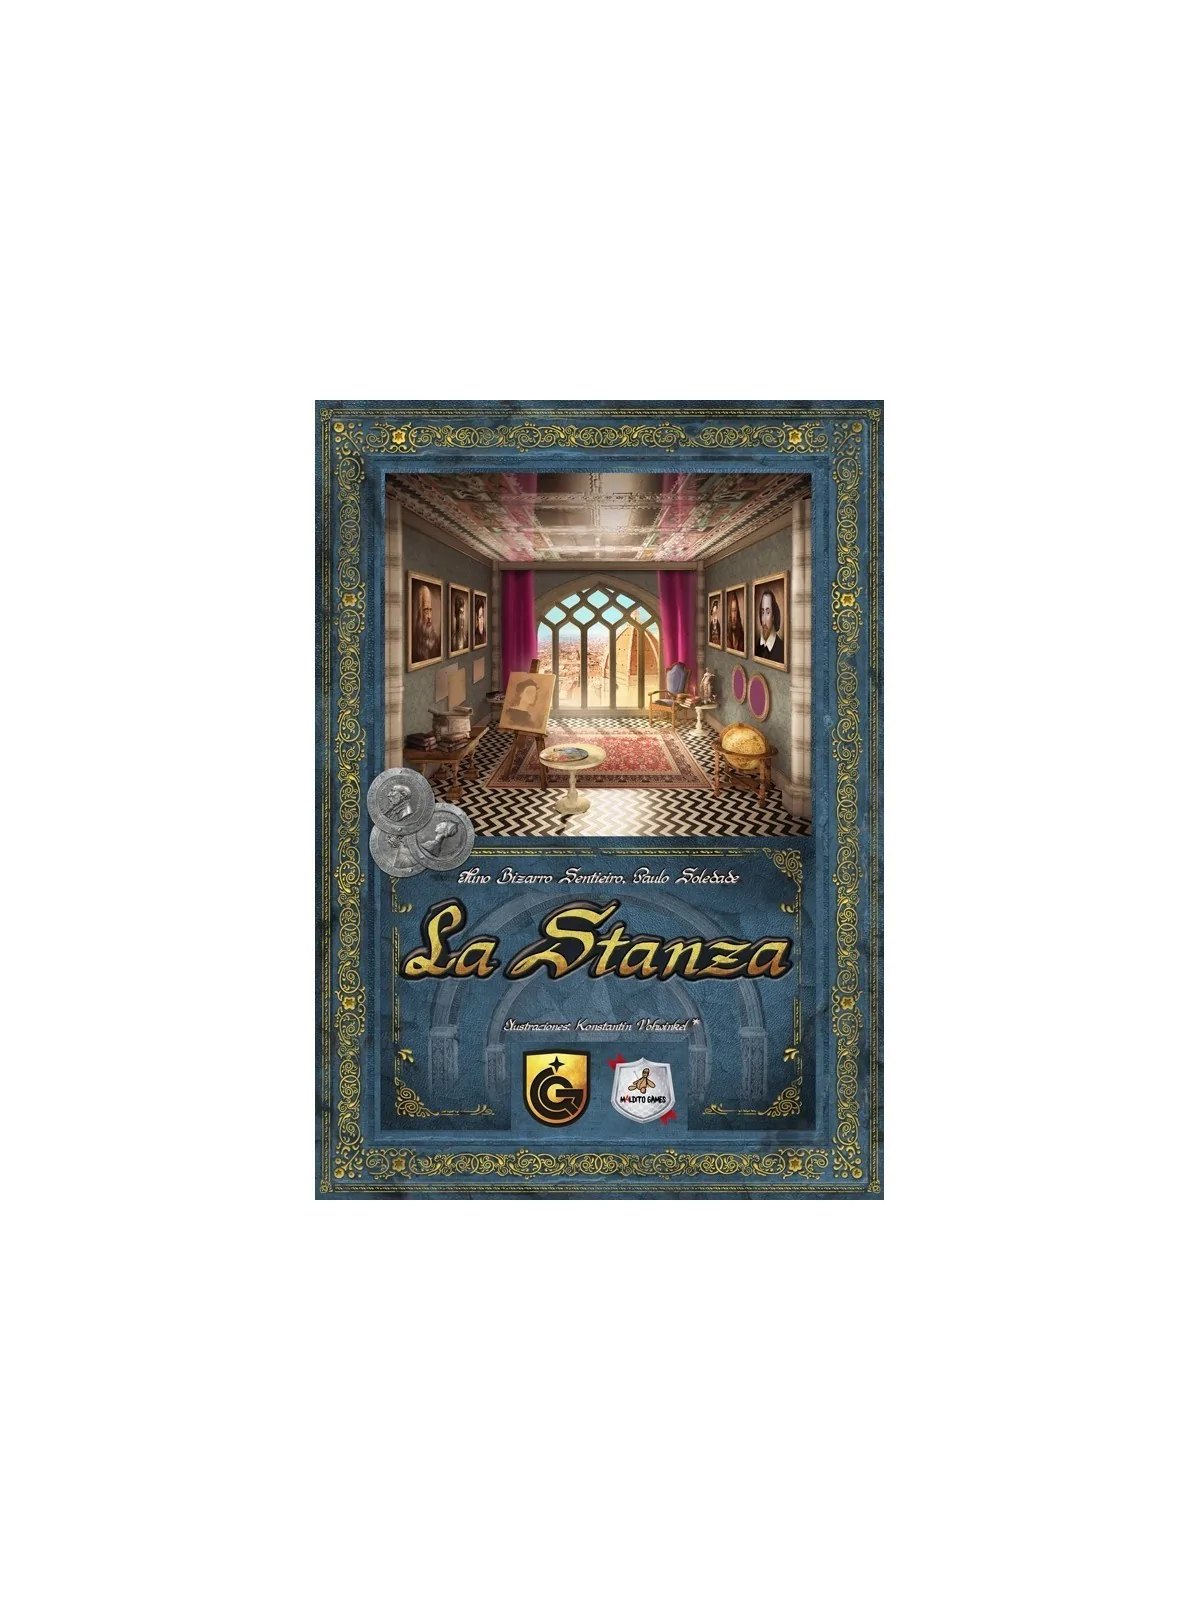 Comprar La Stanza: Edición Deluxe barato al mejor precio 81,00 € de Ma